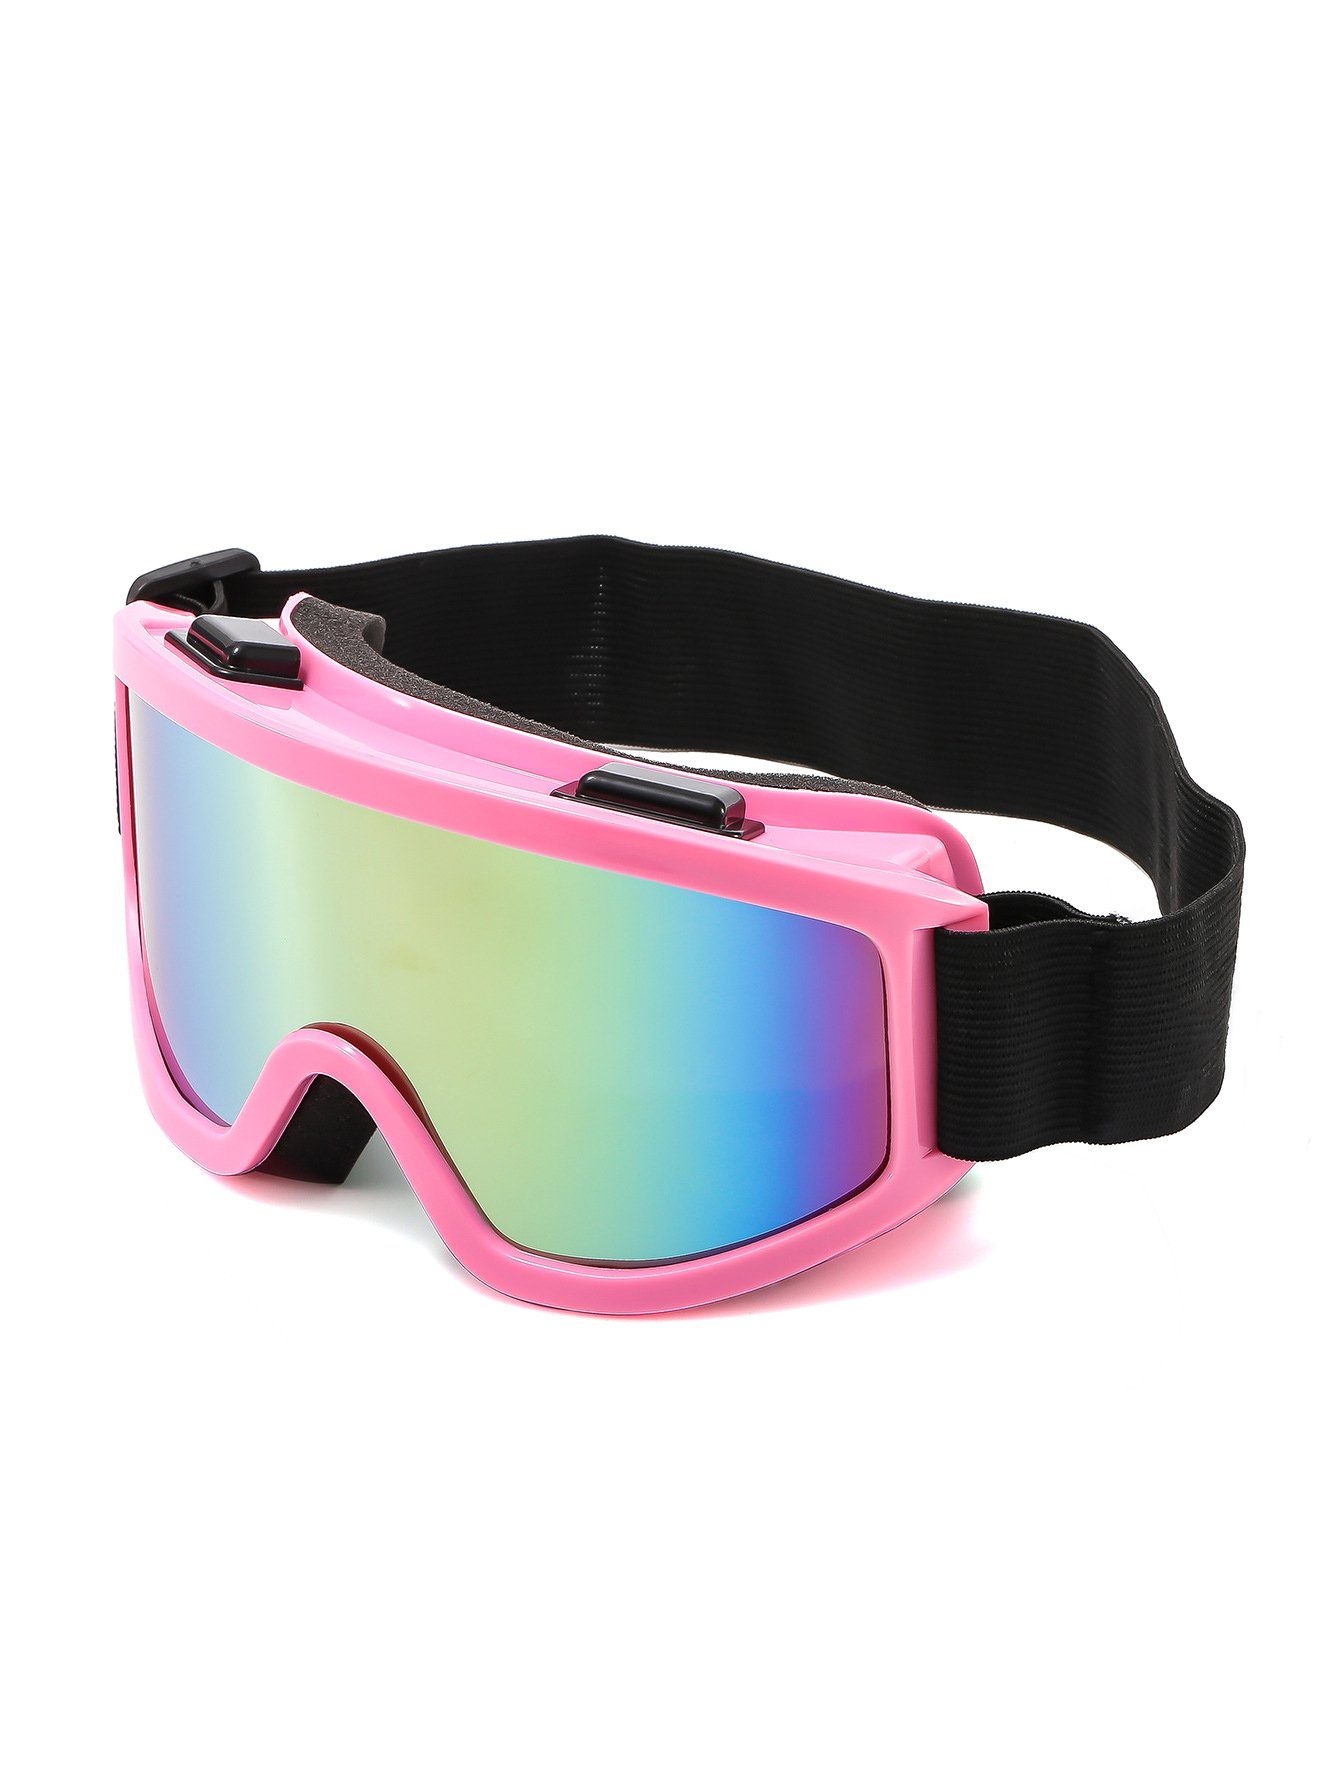 PACIEA Skibrille Winddichte polarisierte Licht- und Nebelschutzbrille für  Bergsteiger